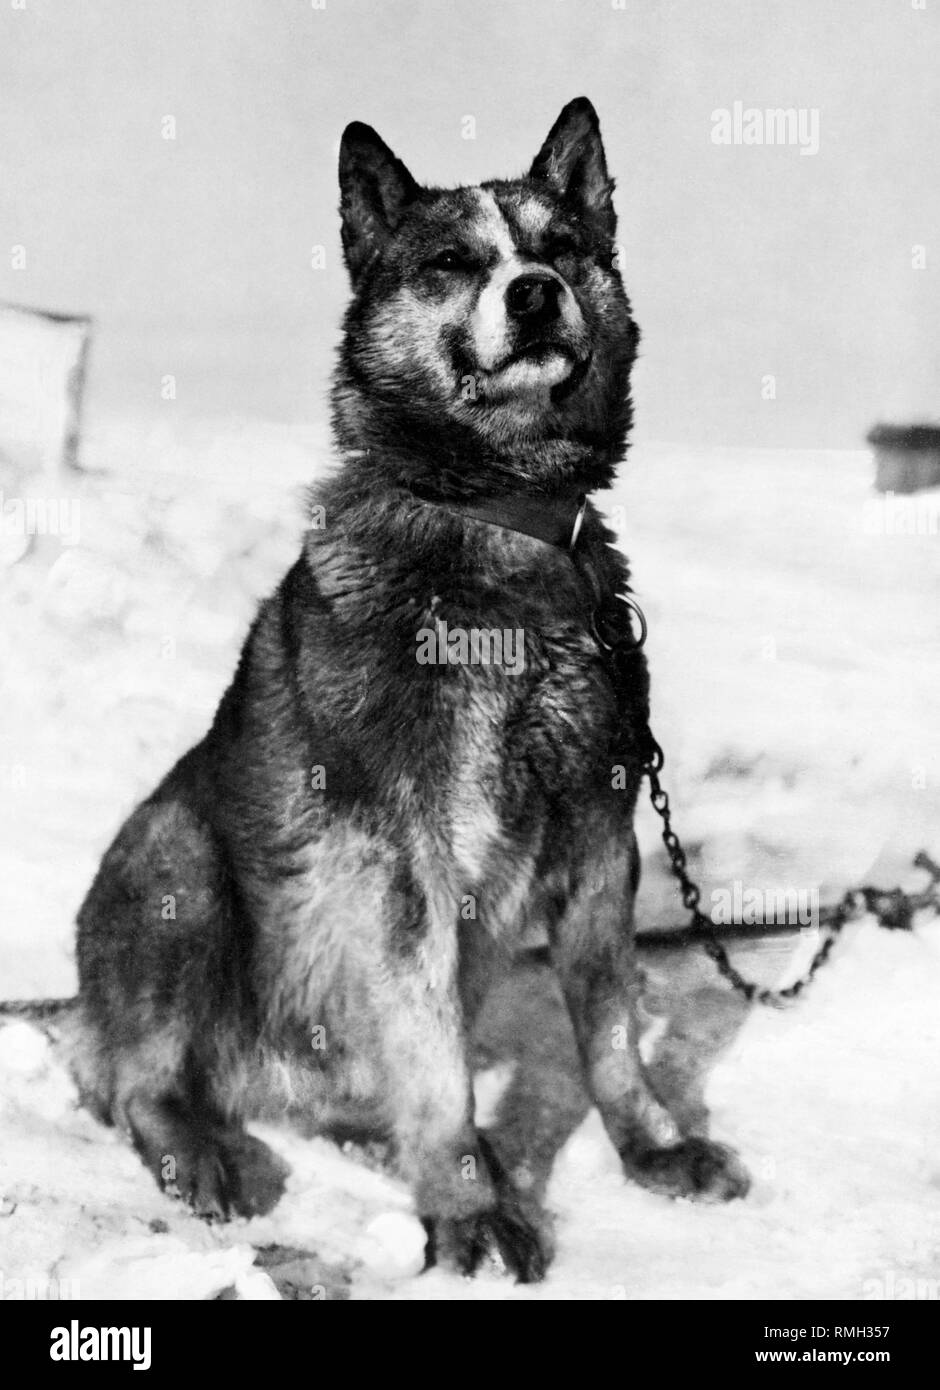 Chris eine der Schlittenhunde Teil der Terra-Nova-Expedition während der British Antarctic Expedition in die Antarktis Foto 1910 getroffen Stockfoto